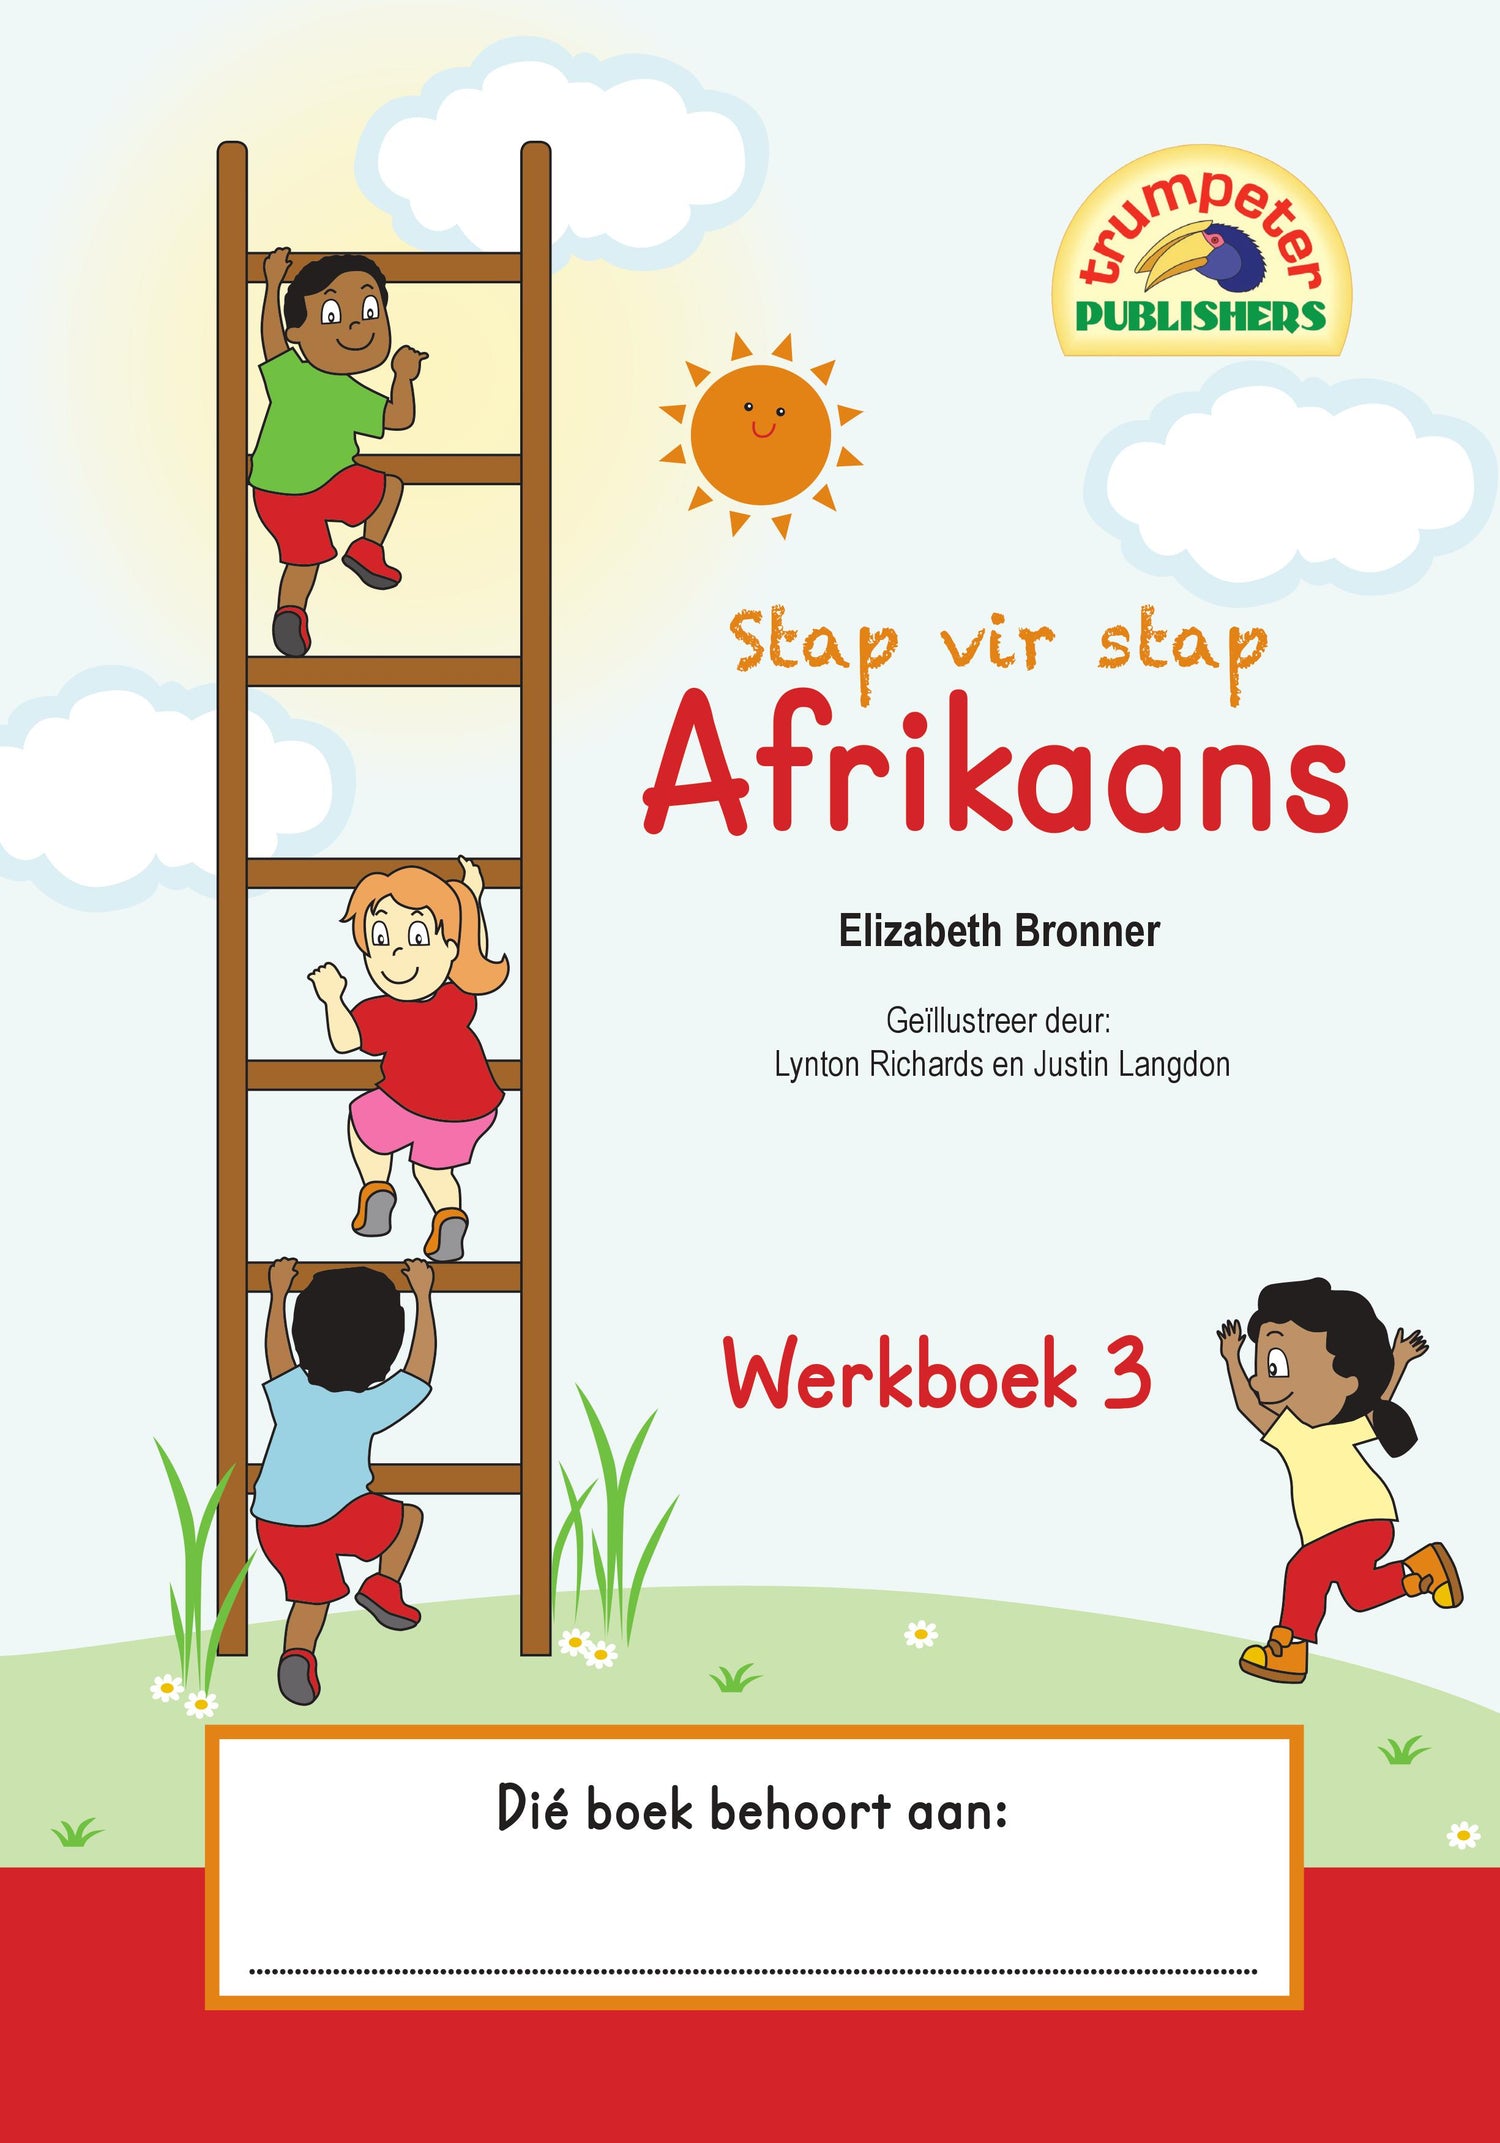 Boek Stap vir stap Afrikaans - Werkboek 3 - Edunation South Africa